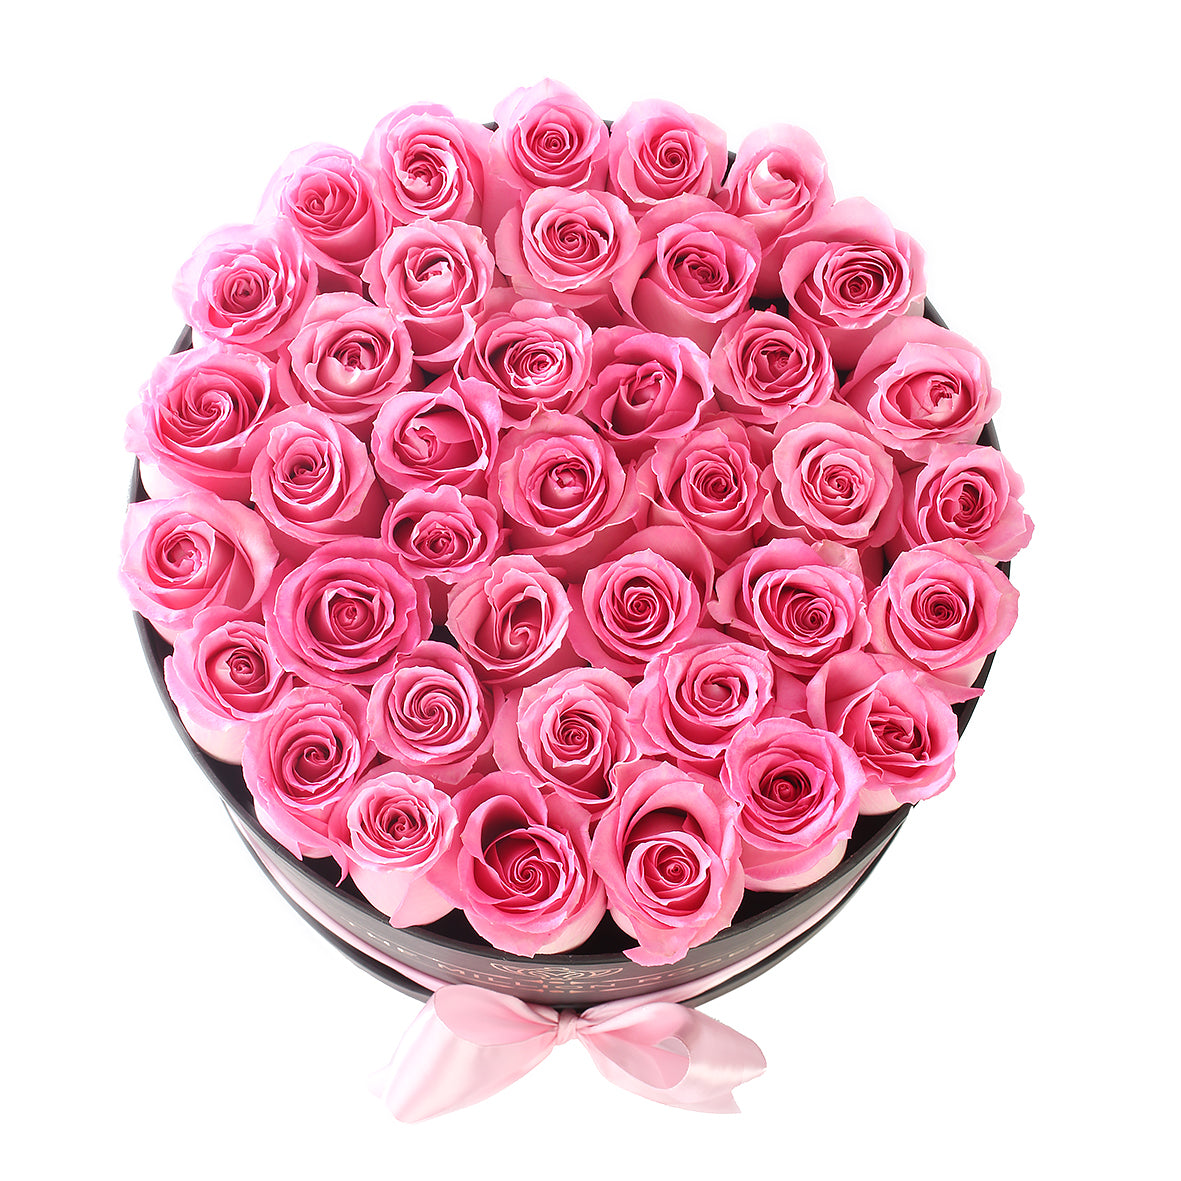 Trandafiri naturali roz in cutie medie